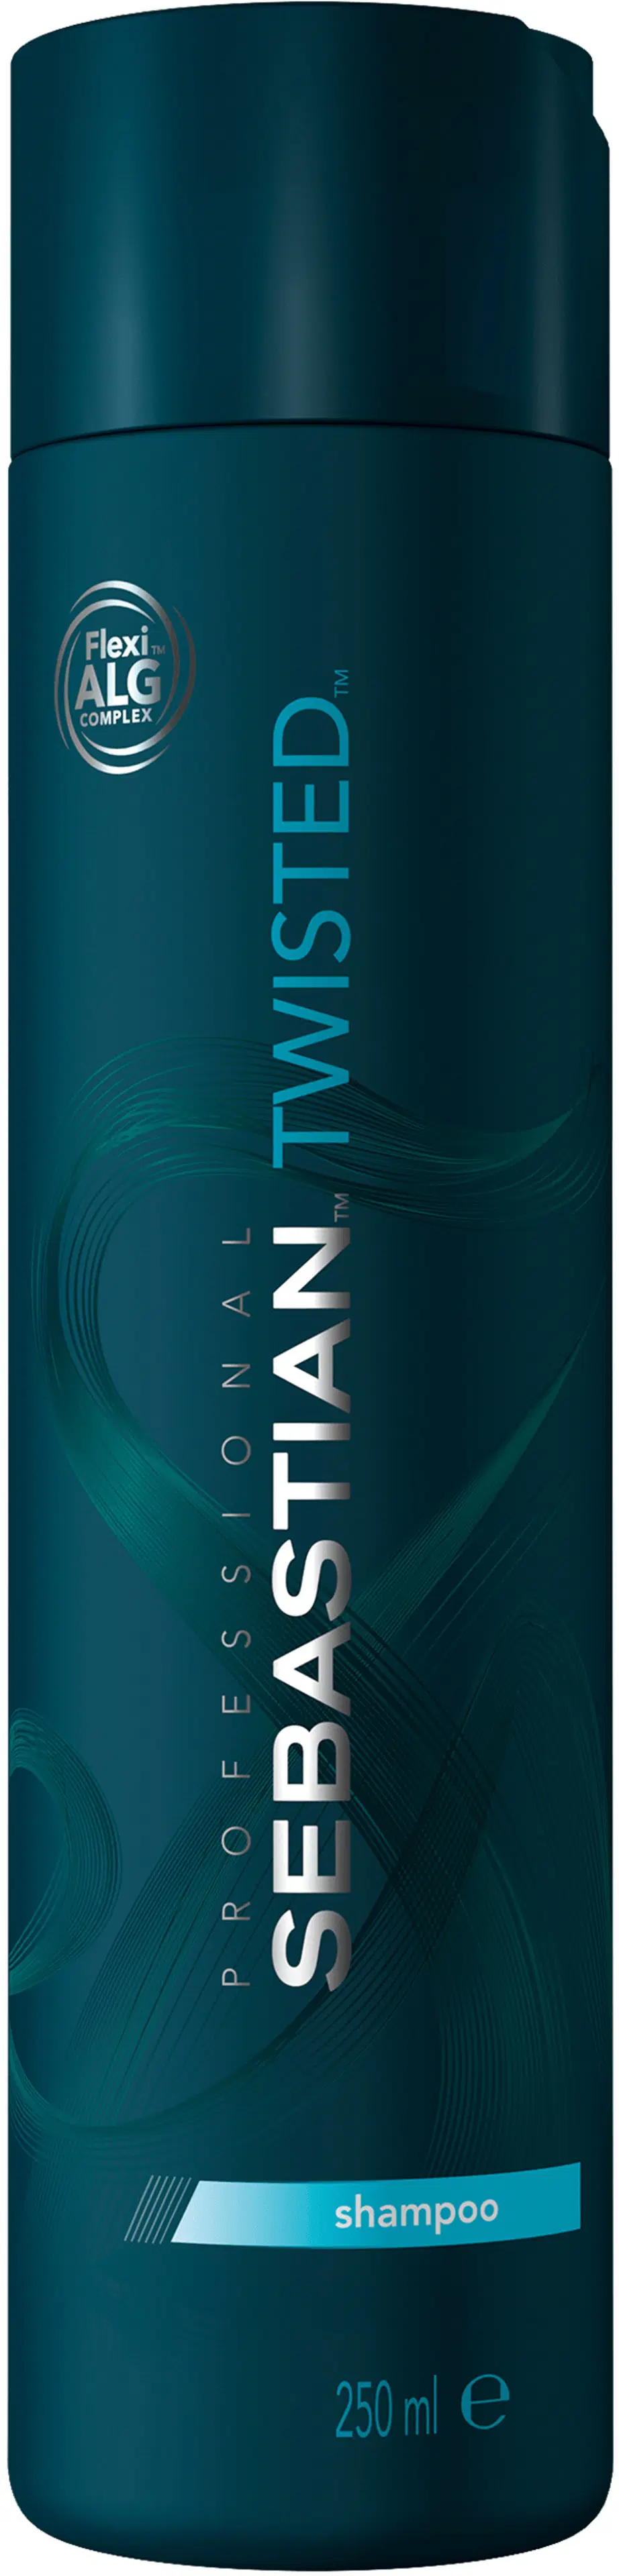 Sebastian Twisted Elastic Cleanser shampoo 250 ml